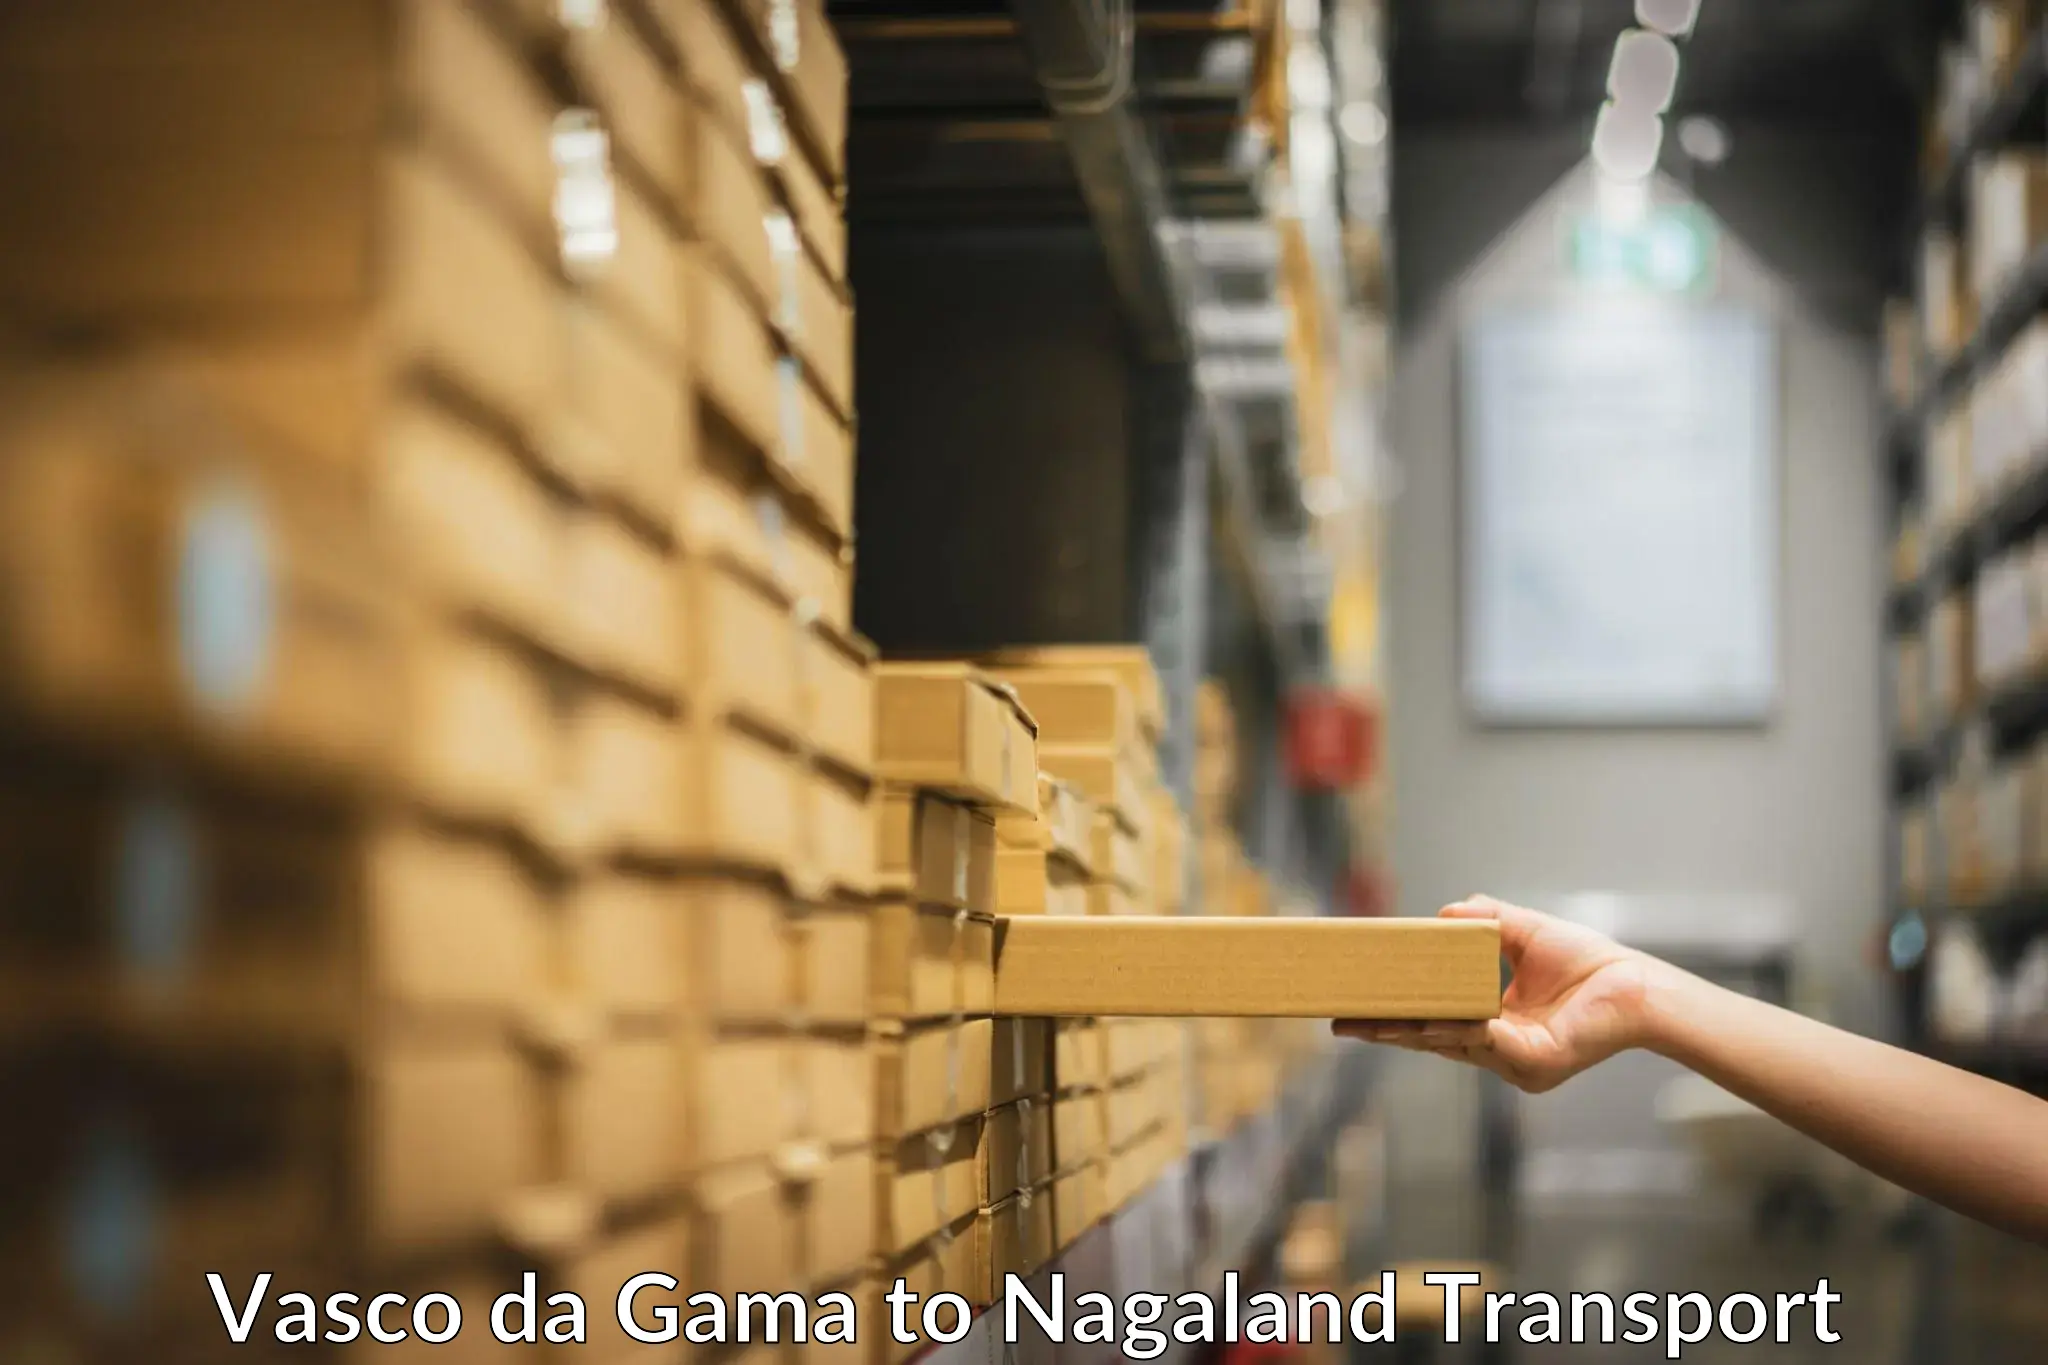 Goods delivery service Vasco da Gama to Nagaland